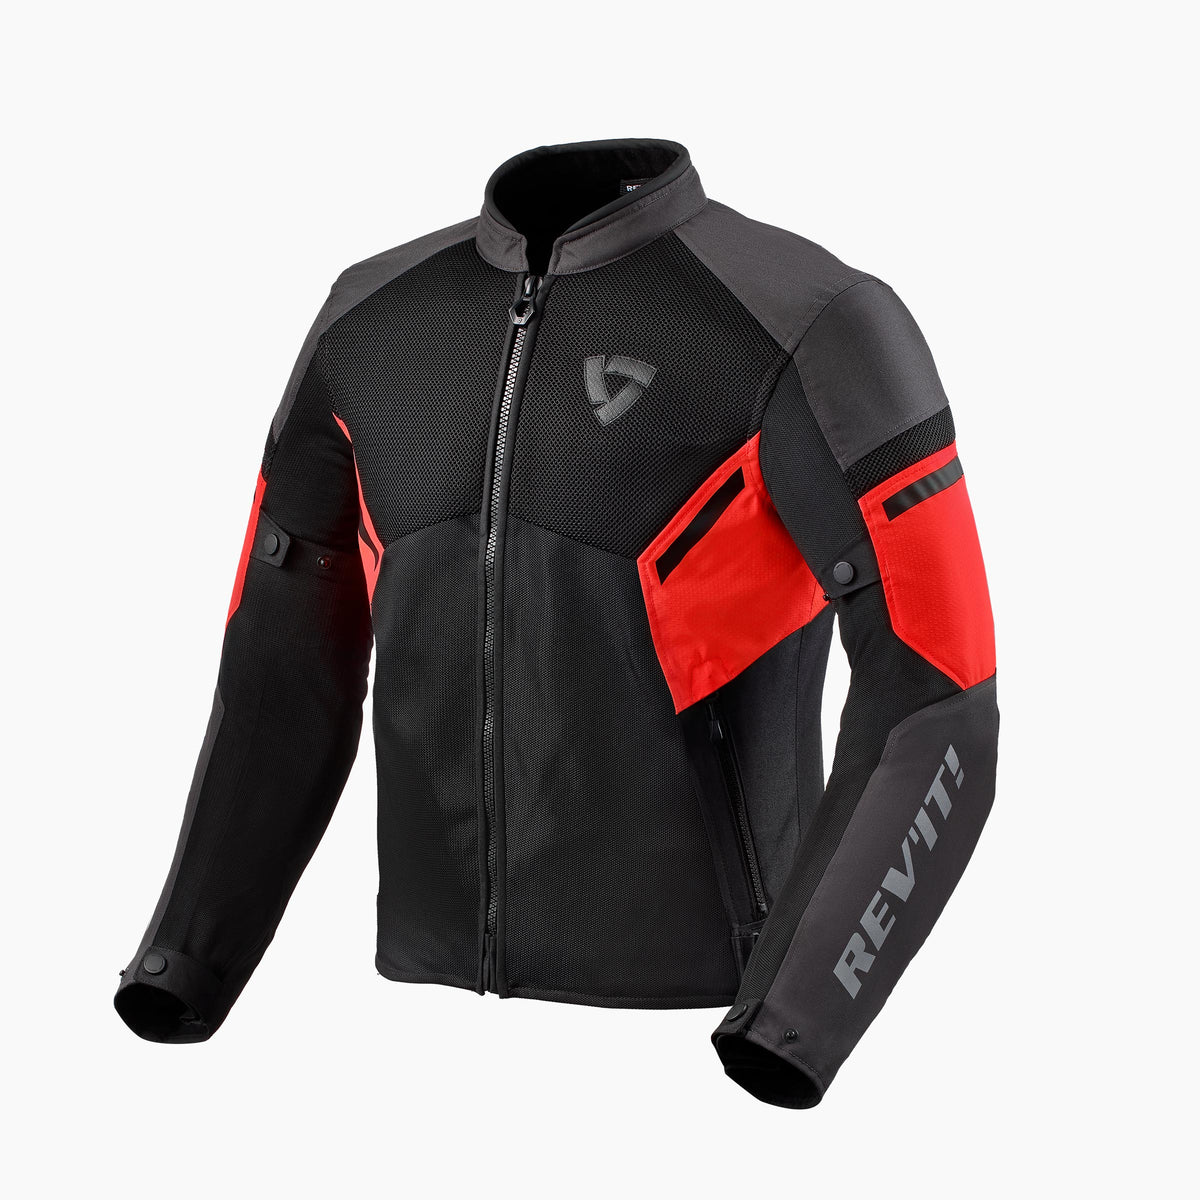 RevIt GT-R Air 3 Jacket Black/Neon Red